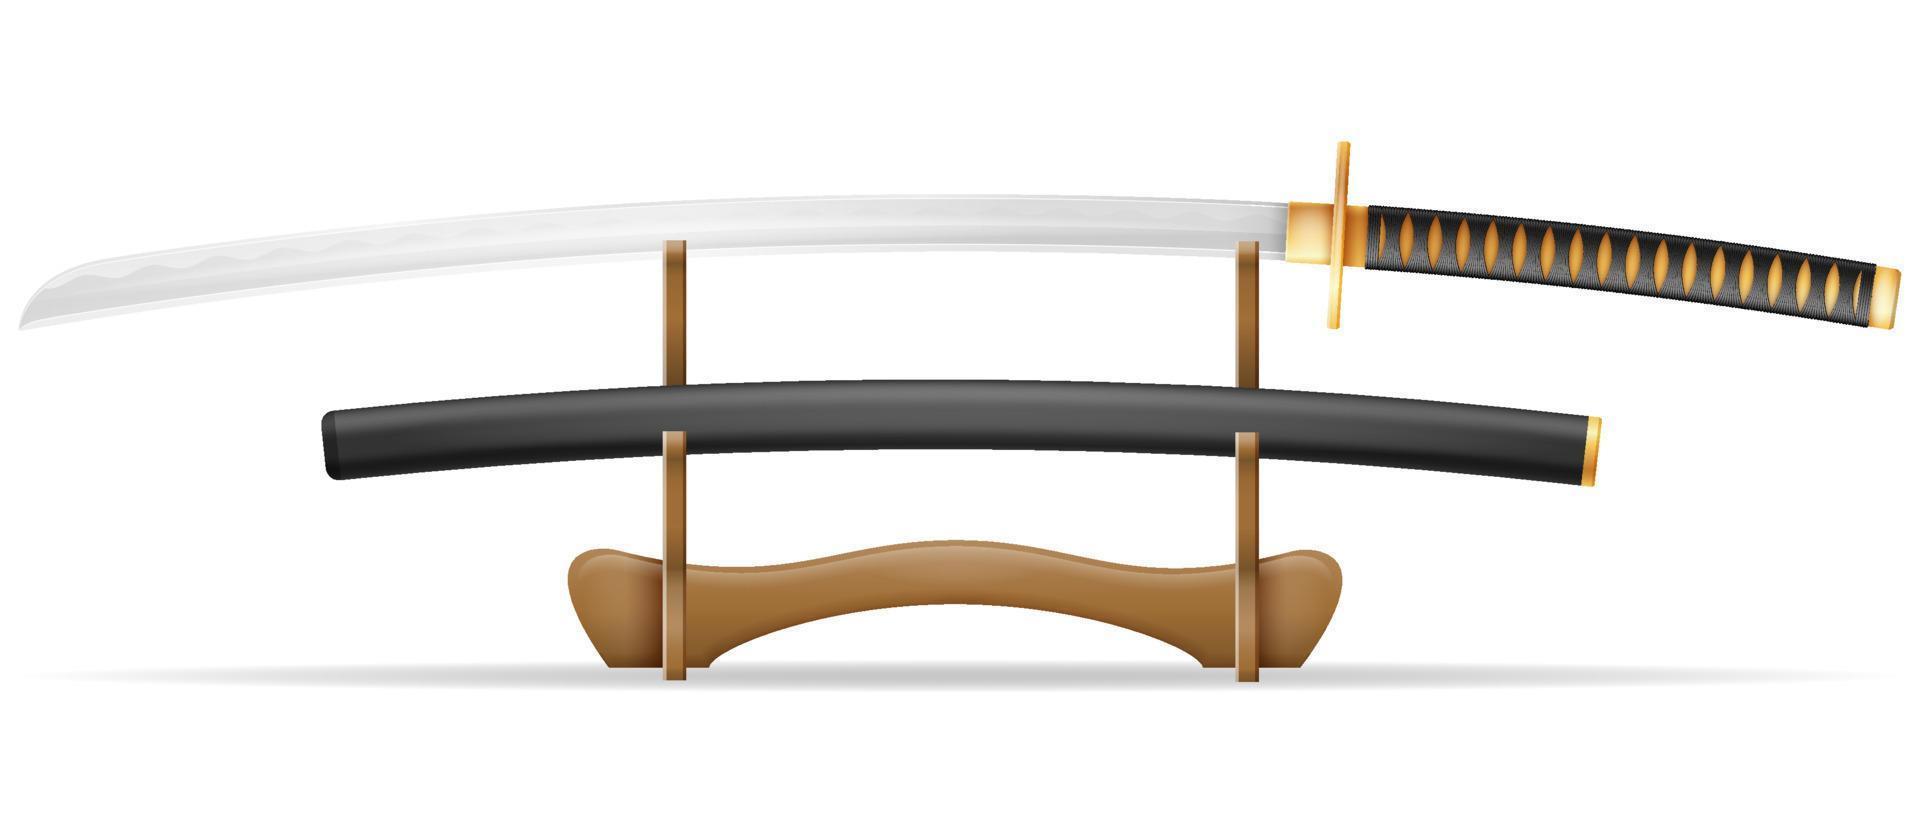 katana sword ninja weapon japanese warrior assassin vector illustration isolated on white background